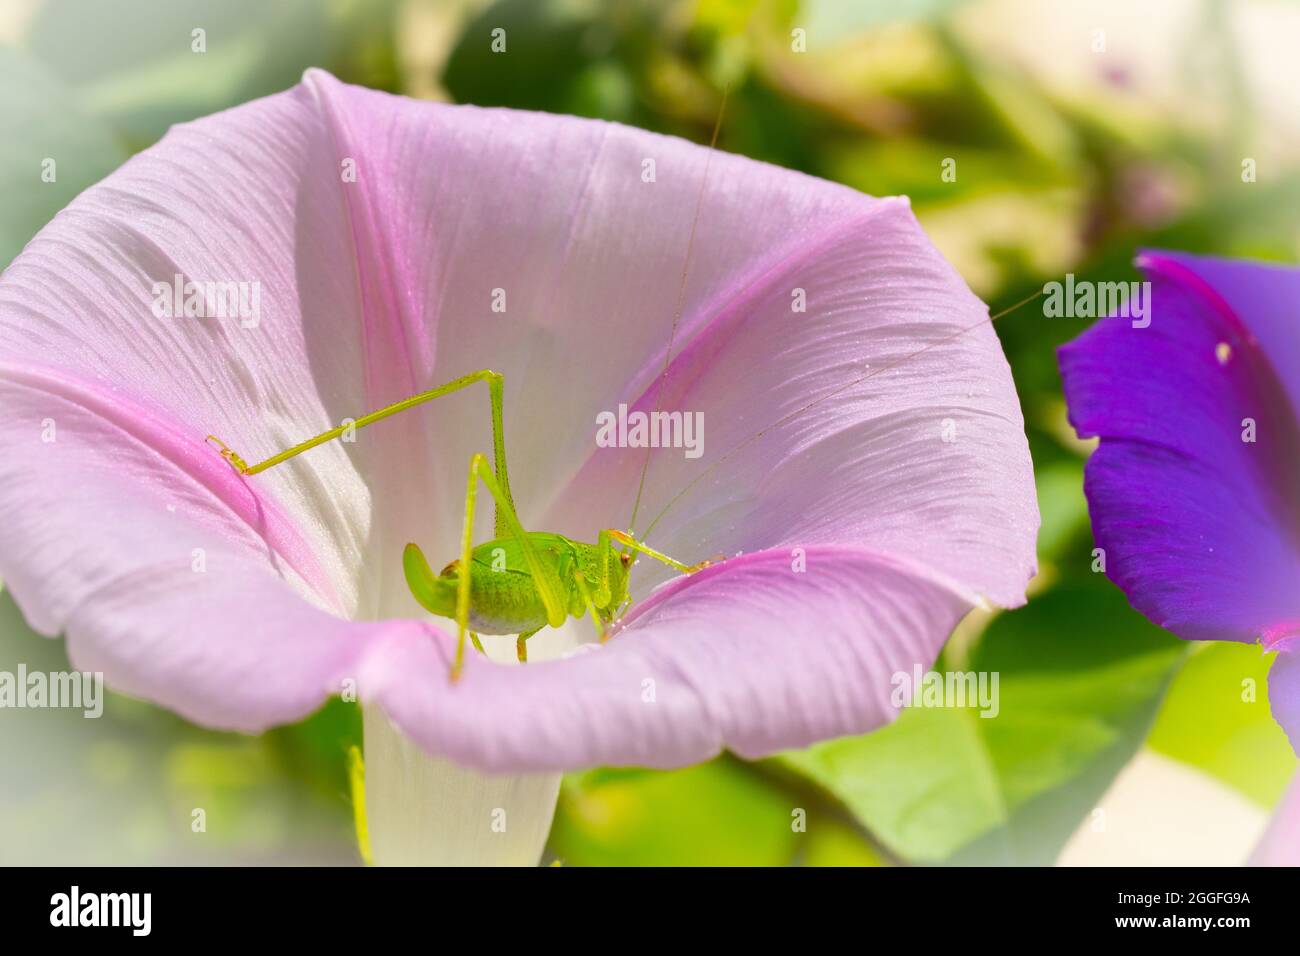 Nahaufnahme Grashüpfer in einer Blüte Stock Photo